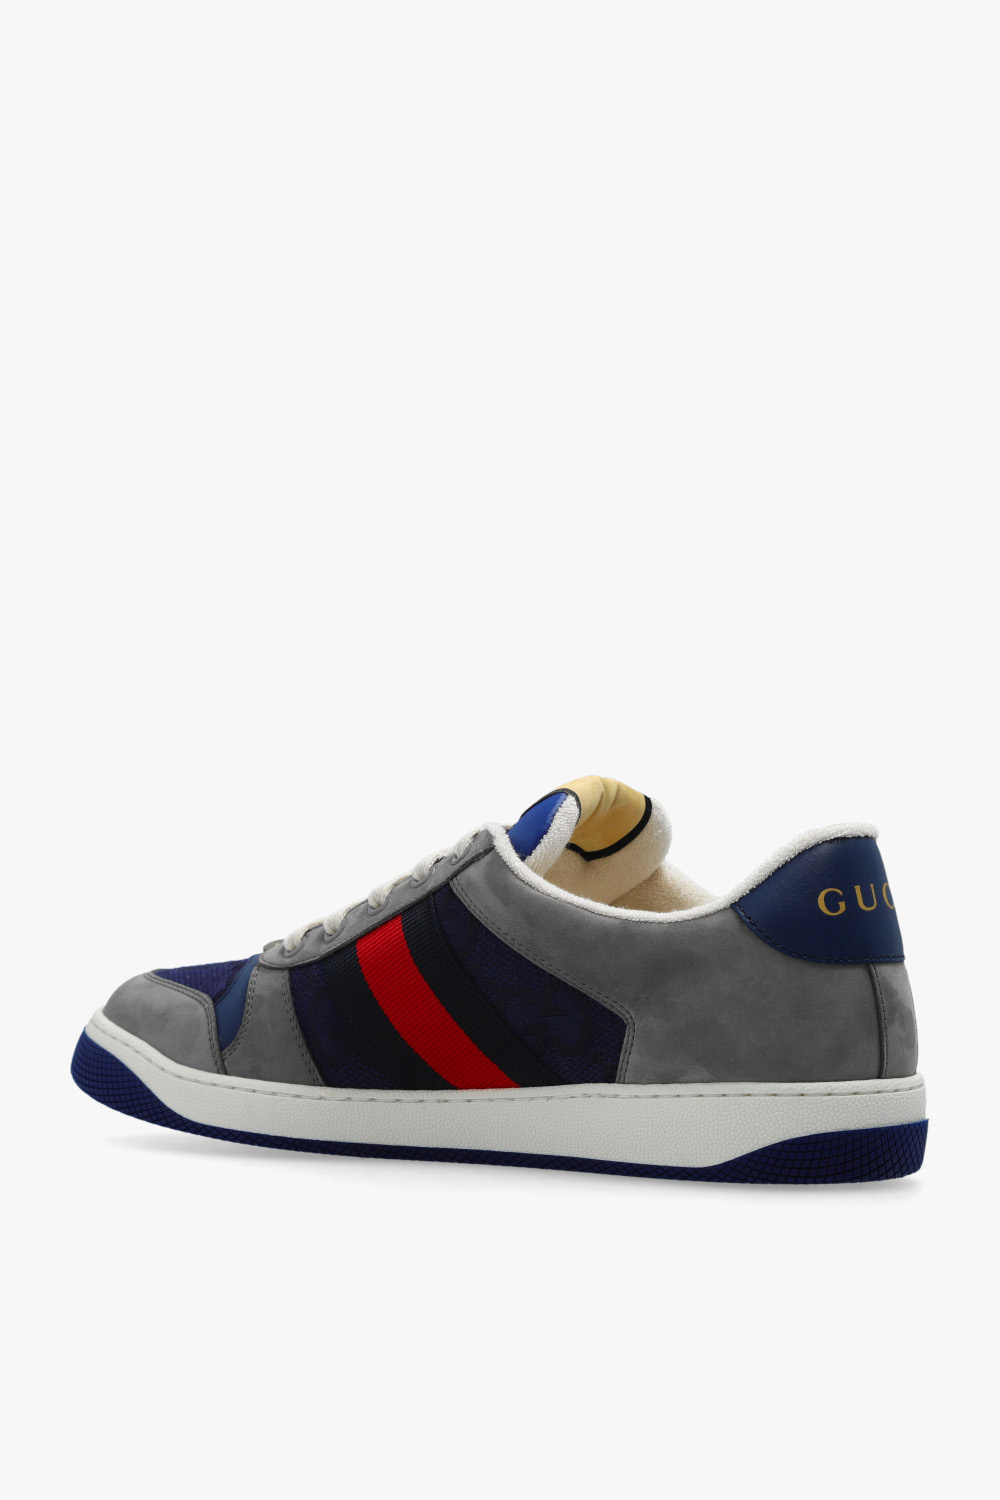 gucci vintage-inspired ‘Screener’ sneakers